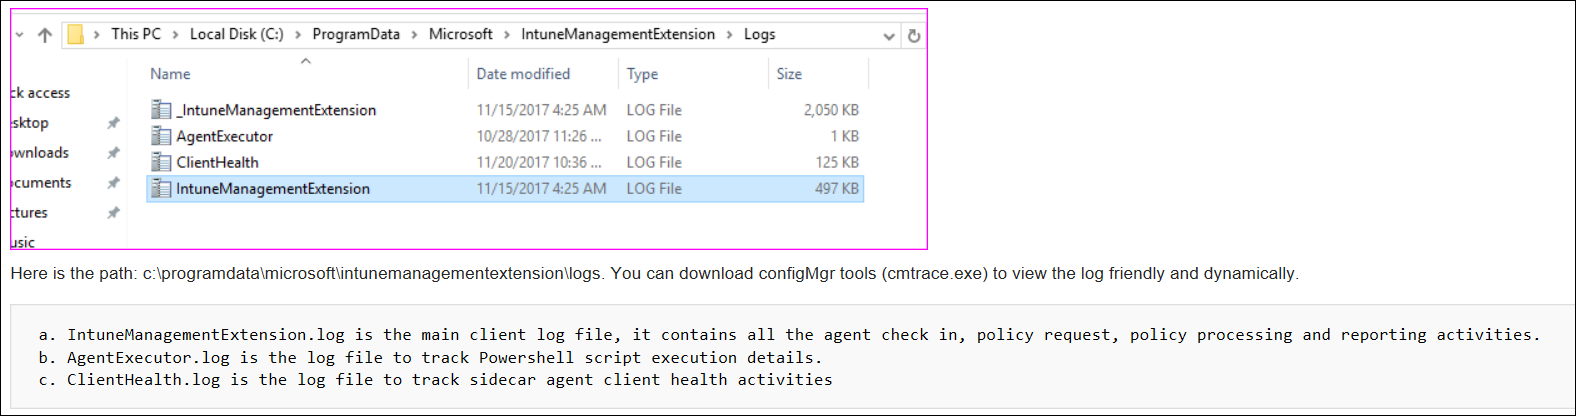 Snímek obrazovky nebo ukázkové protokoly agenta cmtrace v Microsoft Intune